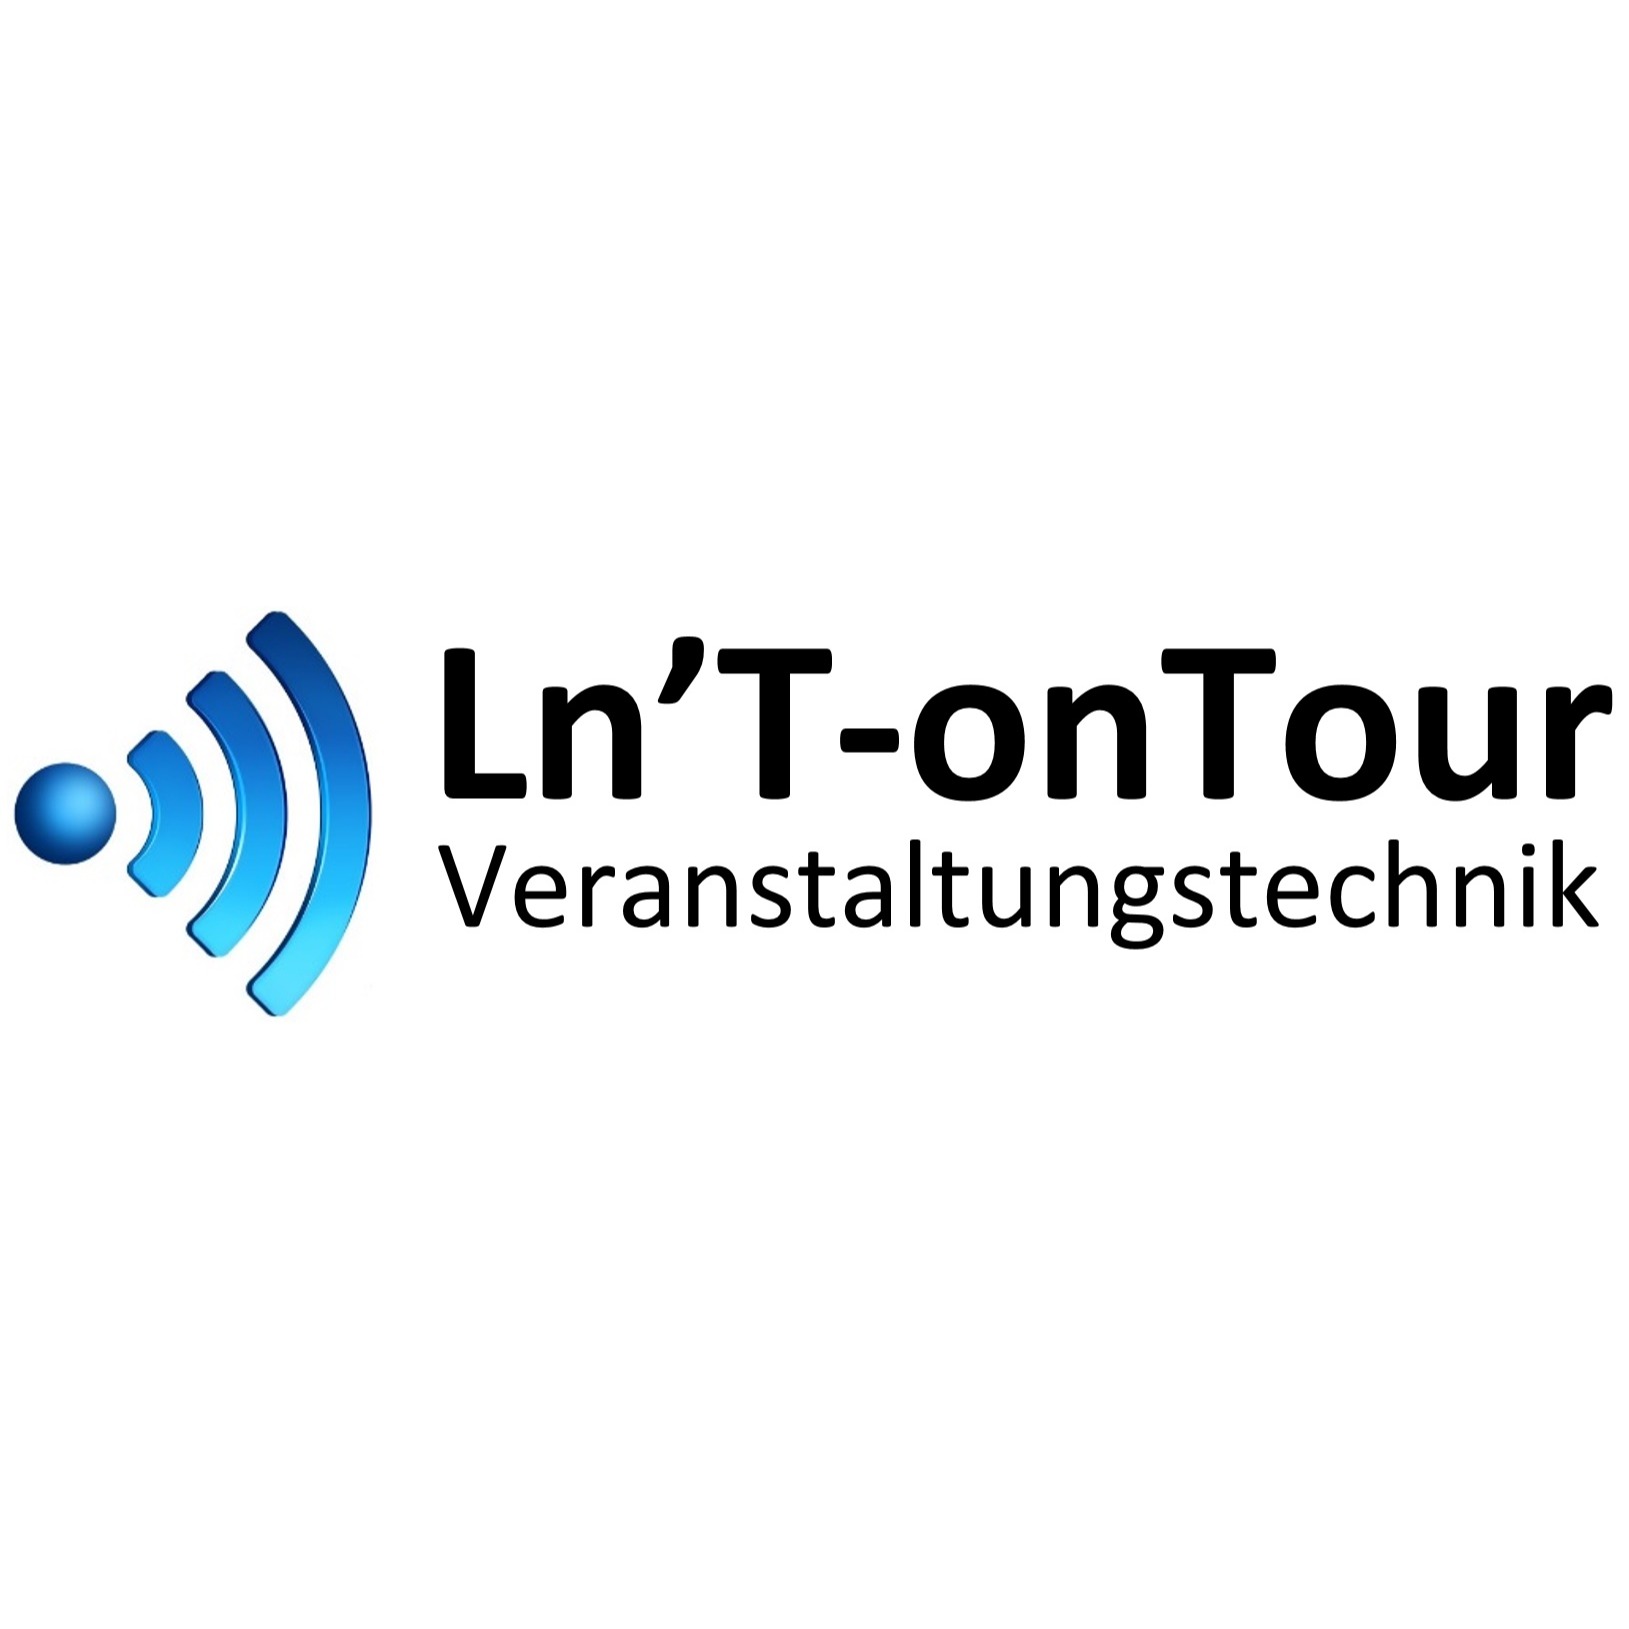 Logo Ln T-onTour Veranstaltungstechnik